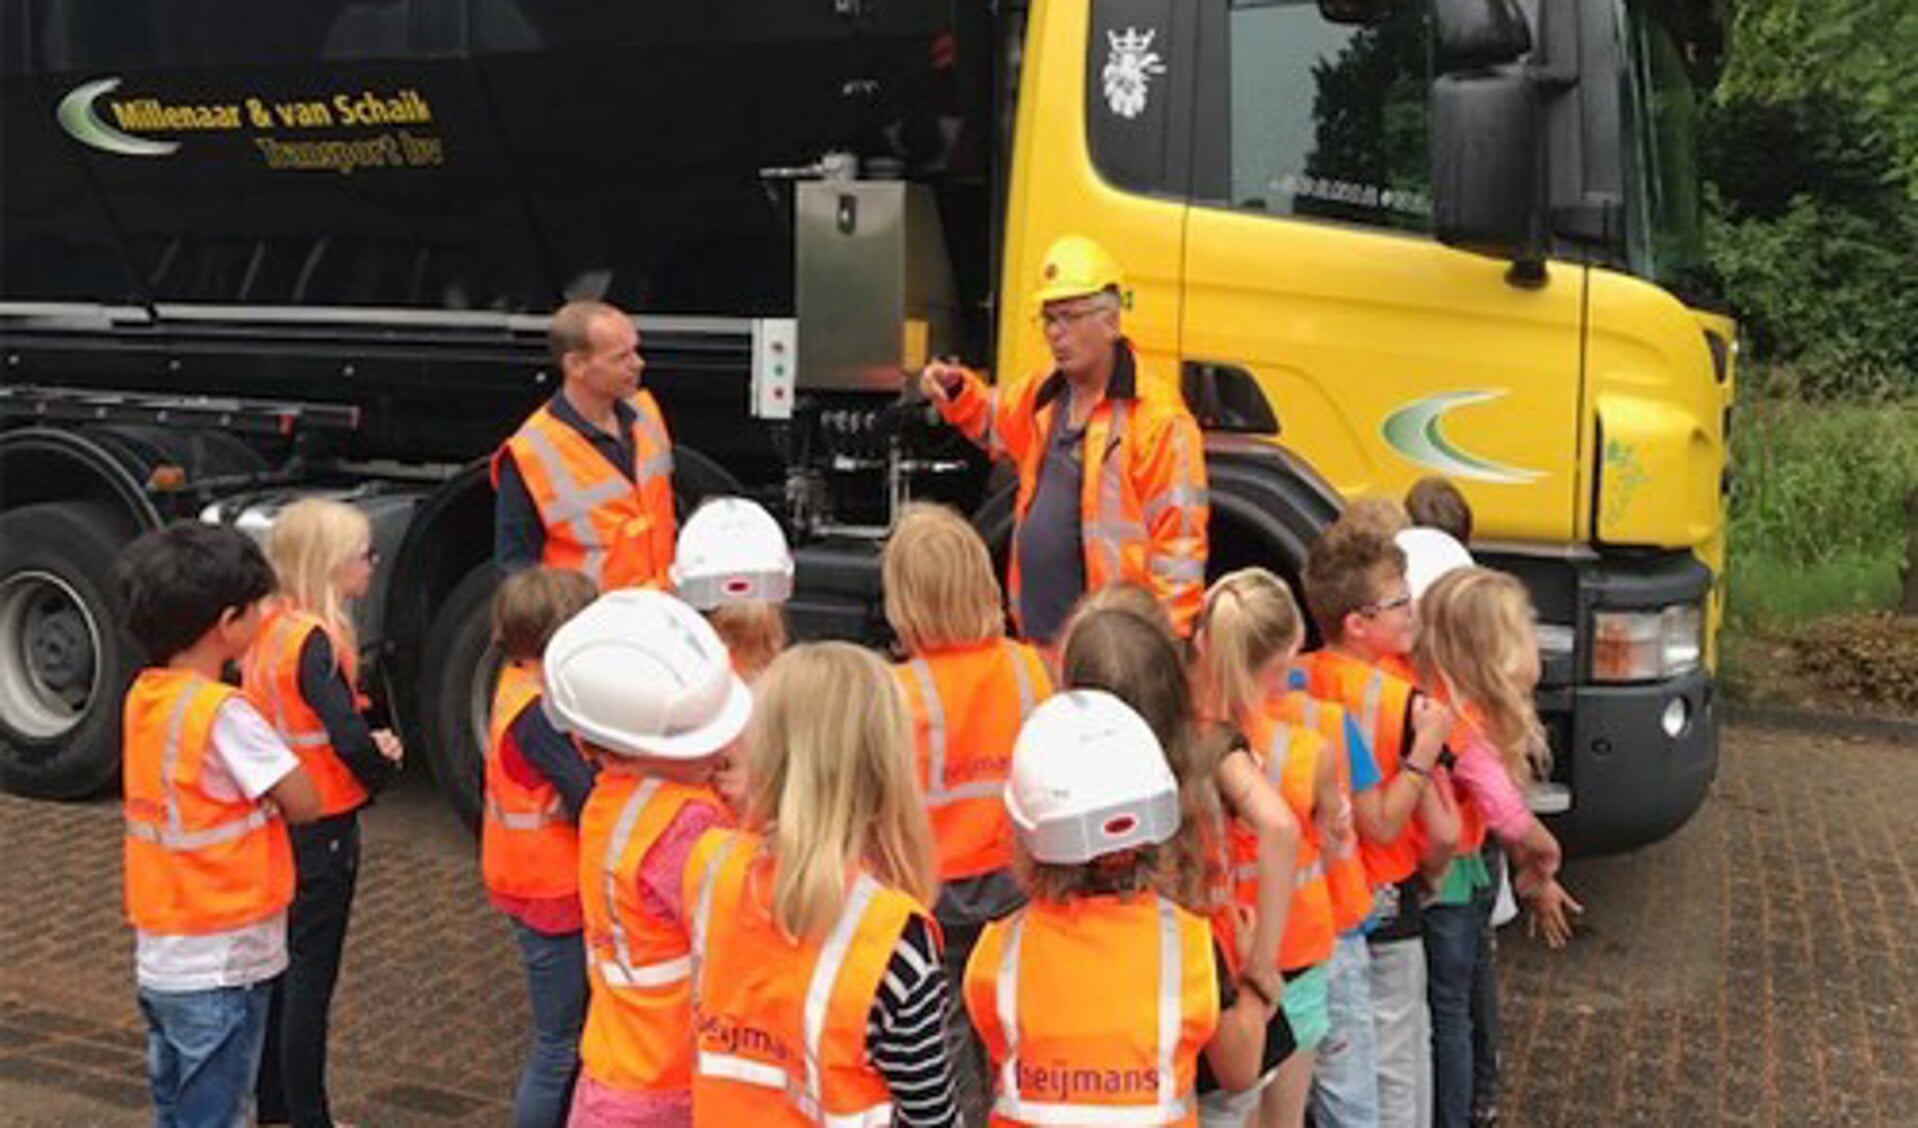 Voorafgaand aan de werkzaamheden kregen de kinderen van basisschool de Nijepoort op een interactieve manier informatie over de werkzaamheden aan de A27 en het viaduct vlakbij de school.